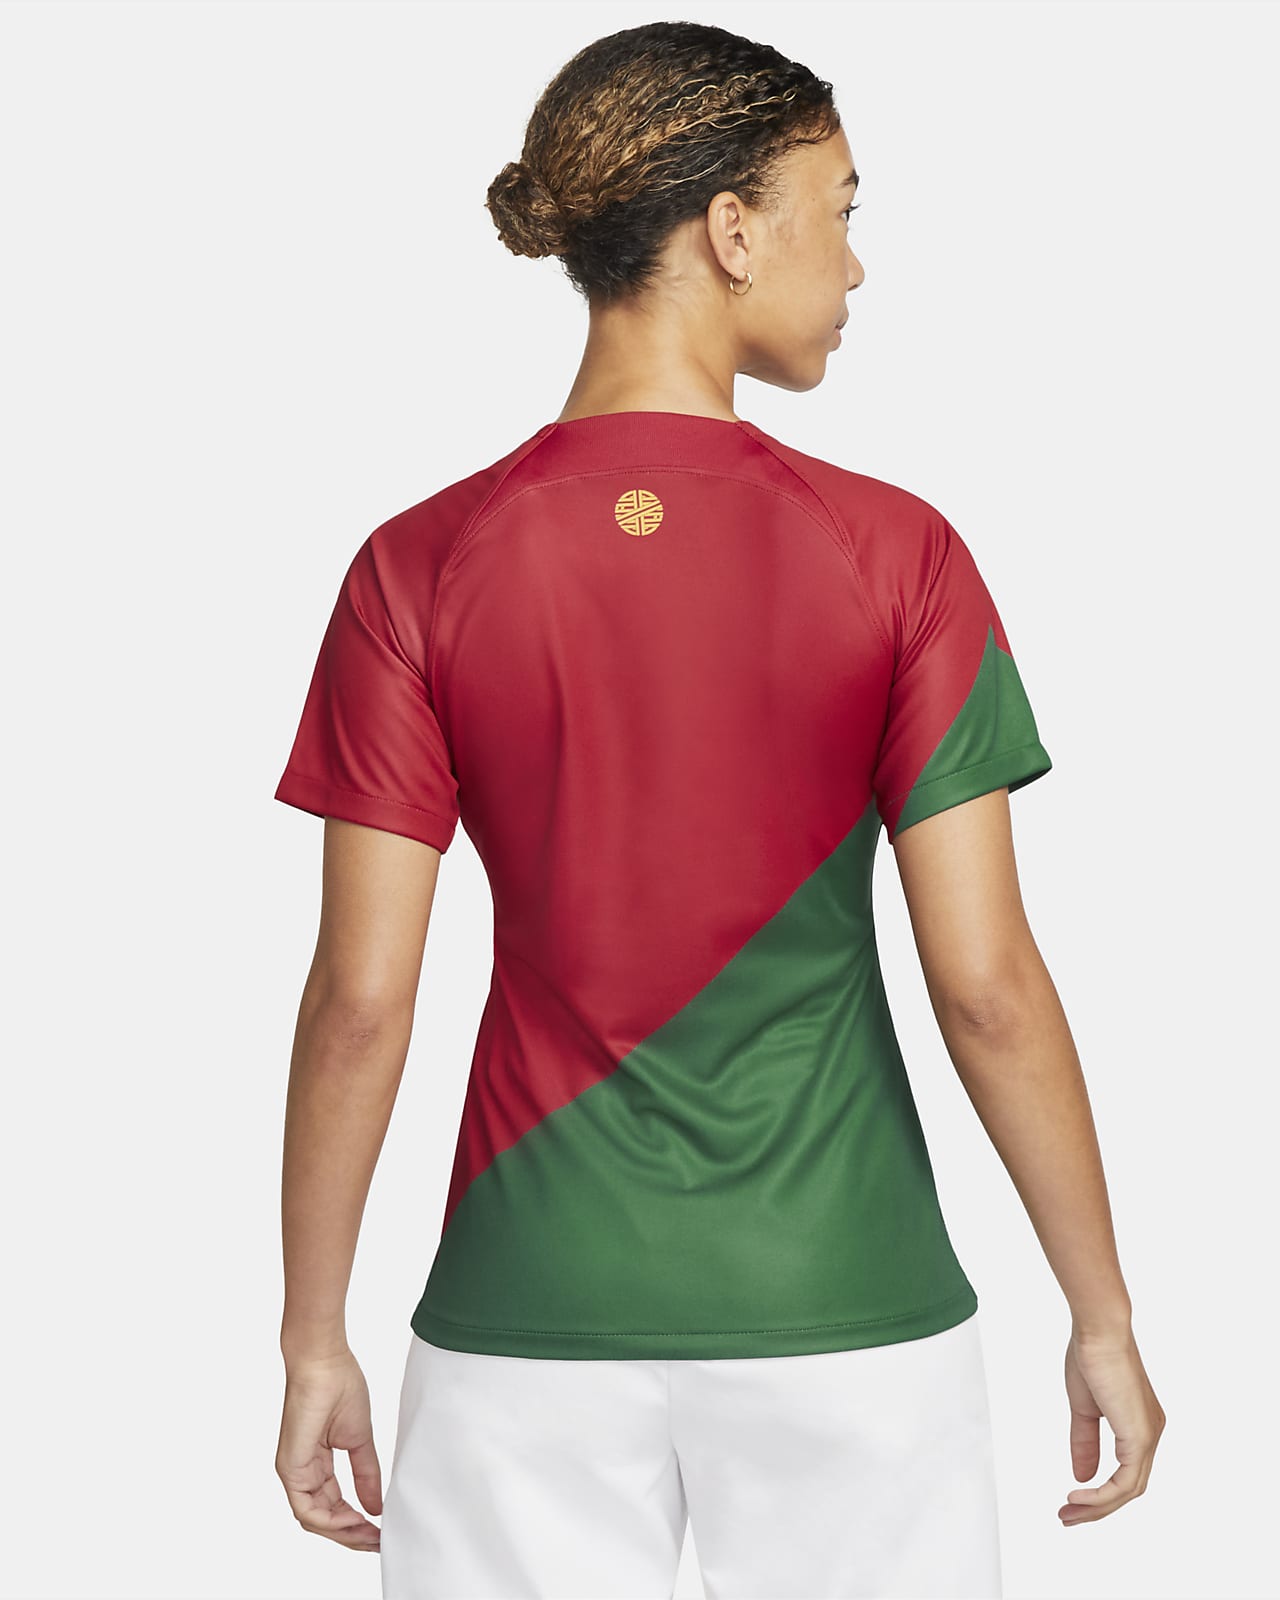 Nouveau Maillot Officiel de Football Homme Nike Portugal Domicile